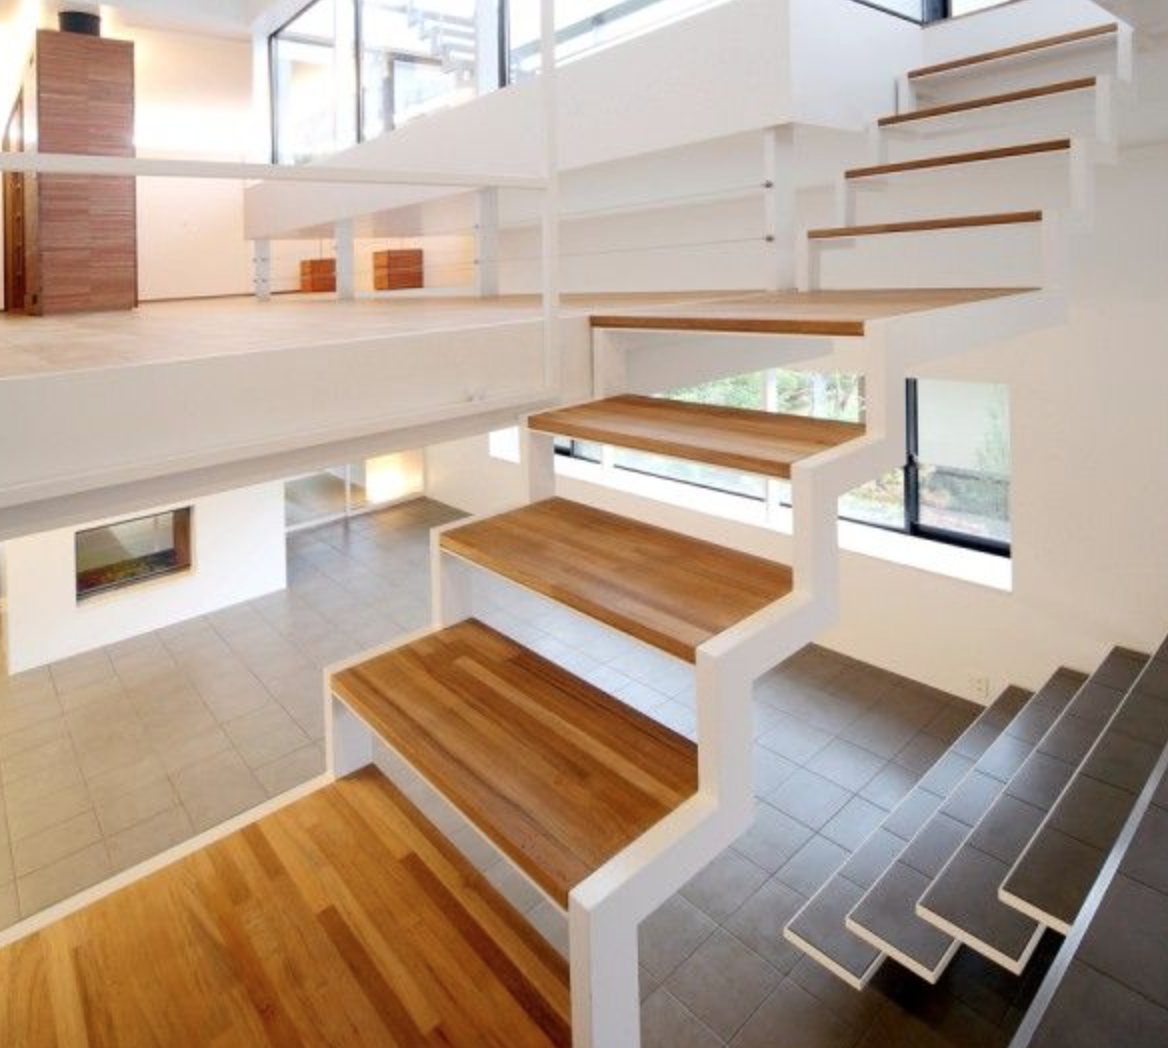 Bauideen Holz Inspirierend Freie Treppe Weiß Stahl Randgerüst Holz Elemente